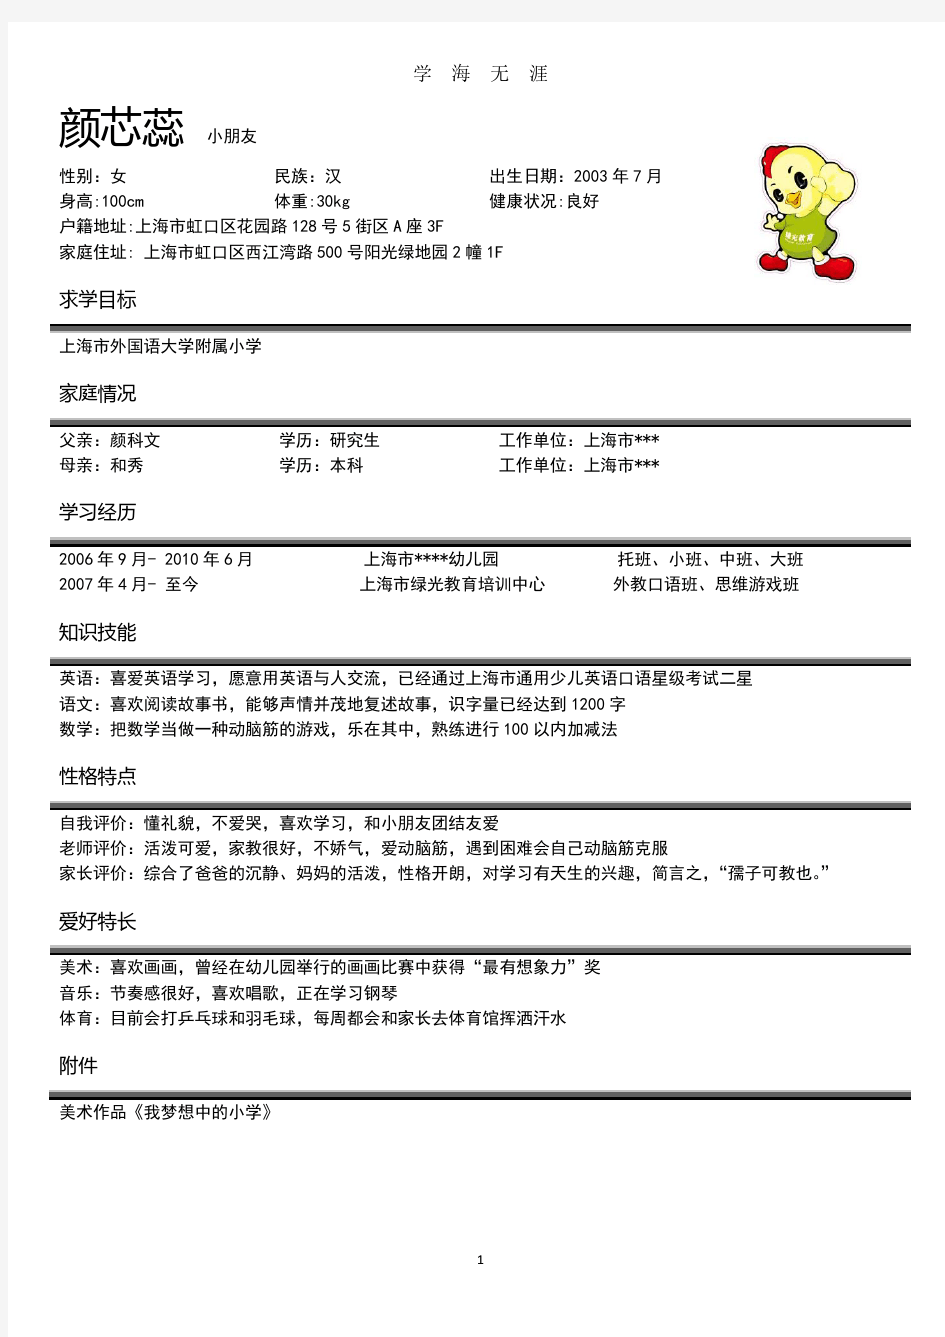 幼升小简历模板(2020年7月整理).pdf